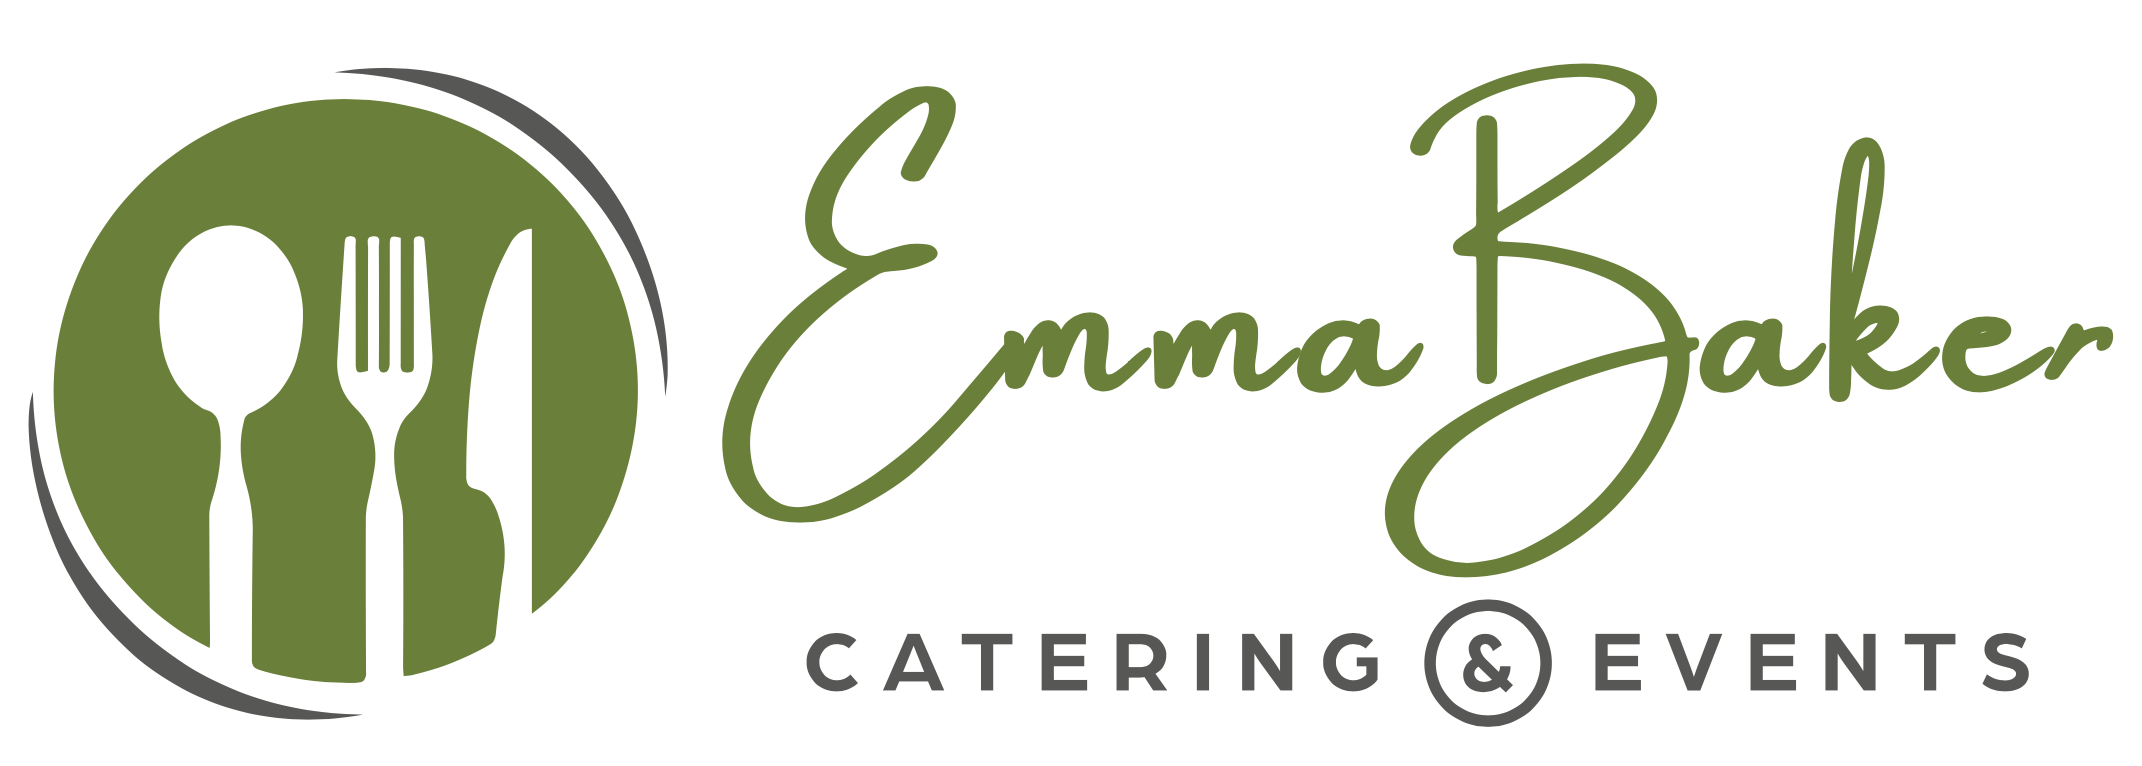 Emma Baker Catering